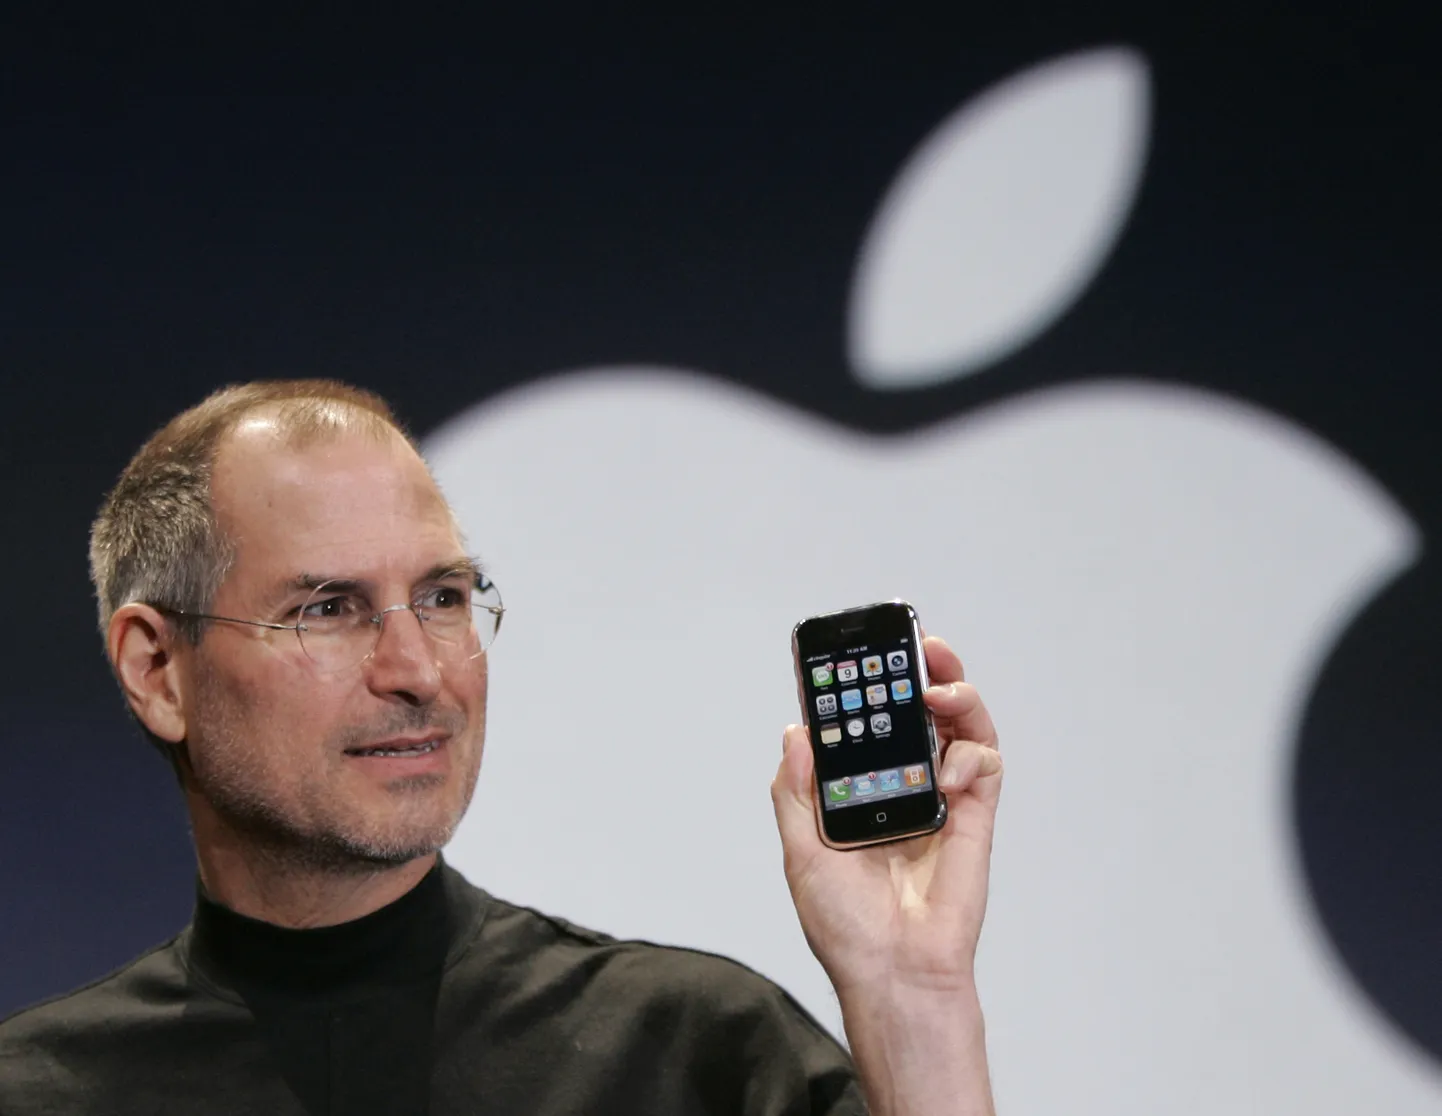 Stīvs Džobss iepazīstinot ar pirmo "iPhone" 2007. gadā.